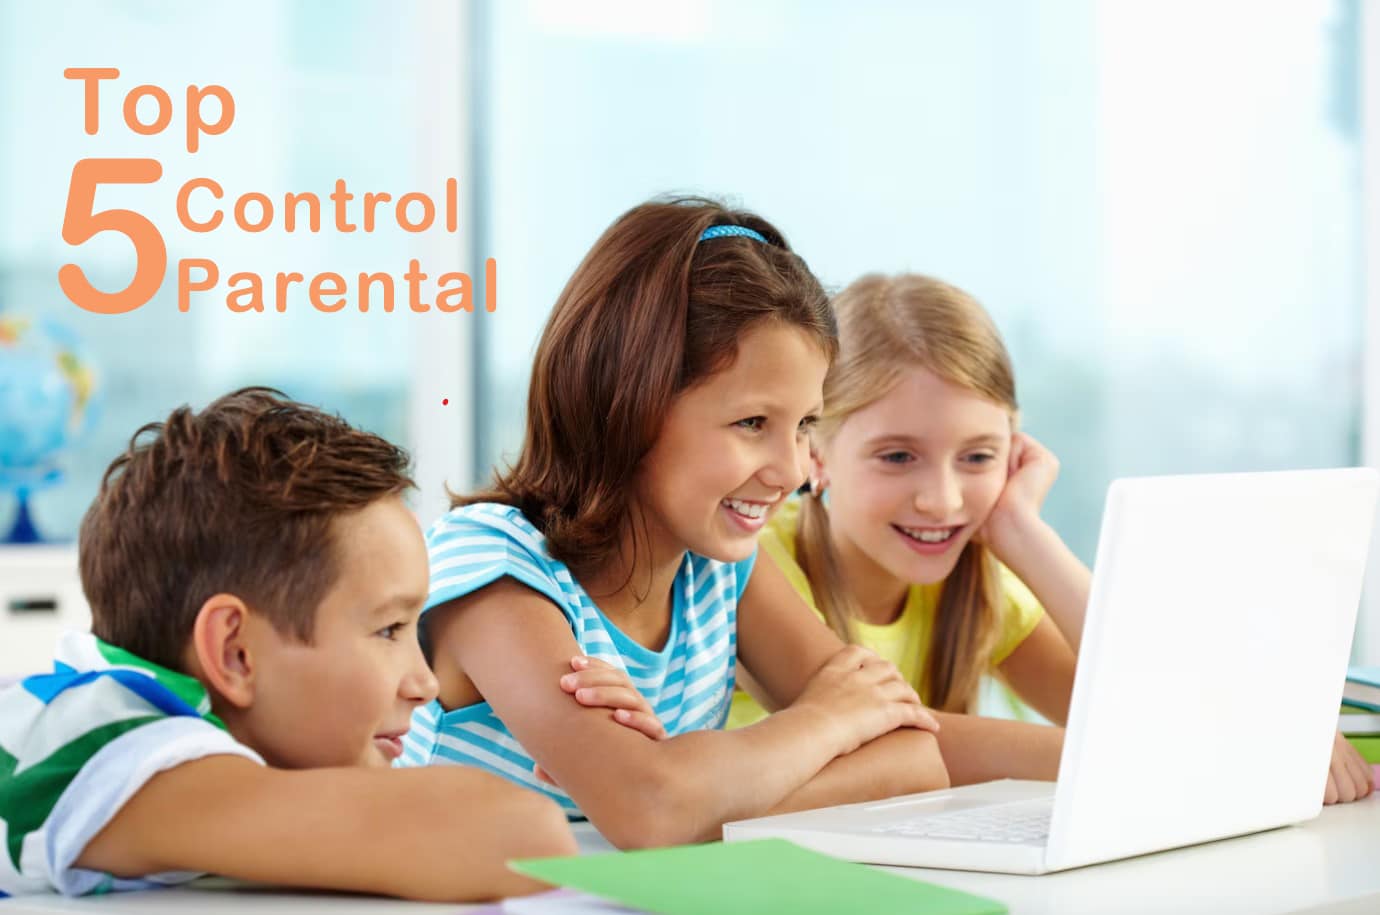 plicaciones de control parental para PC